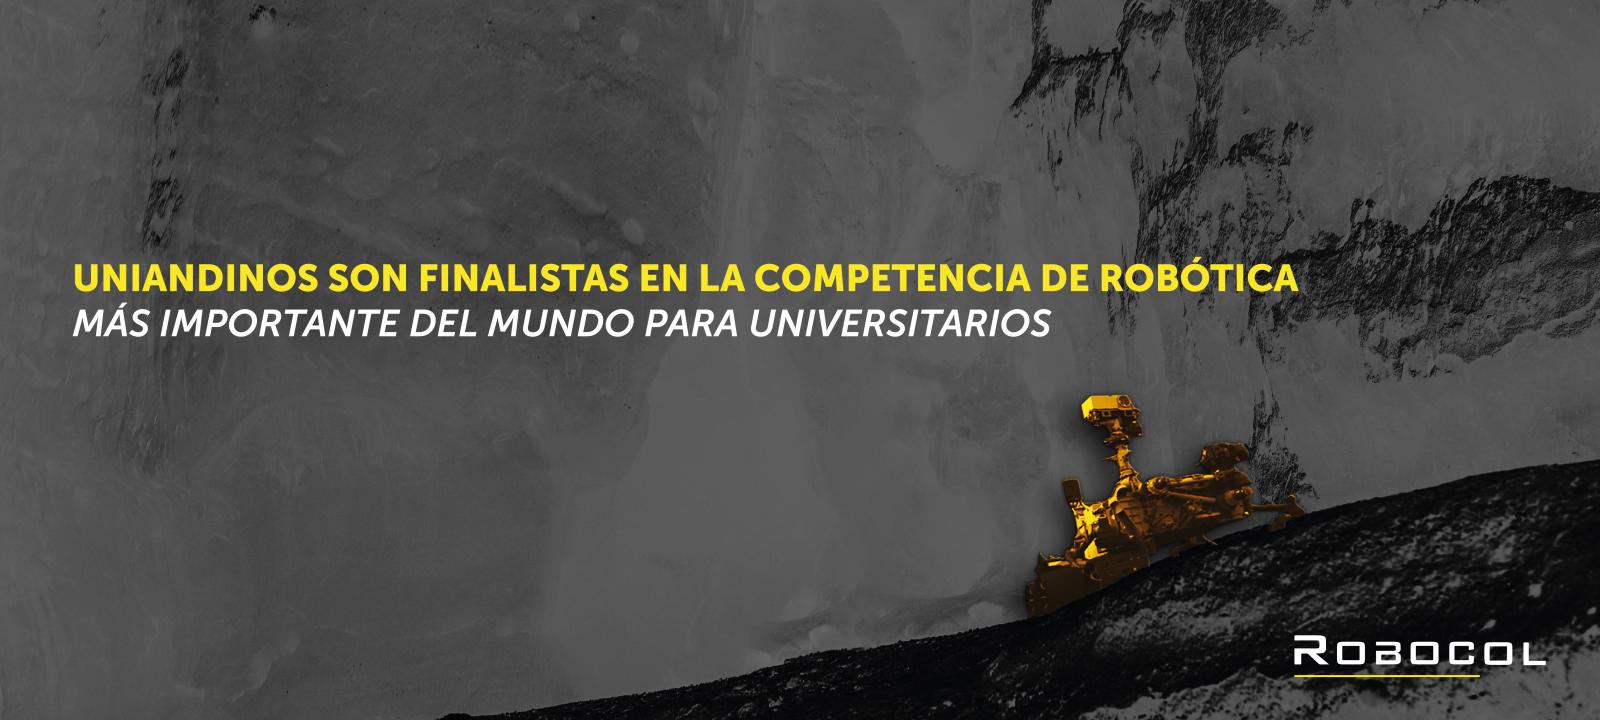 Uniandinos son finalistas en la competencia robotica mas importante del mundo University Rover Challenge 